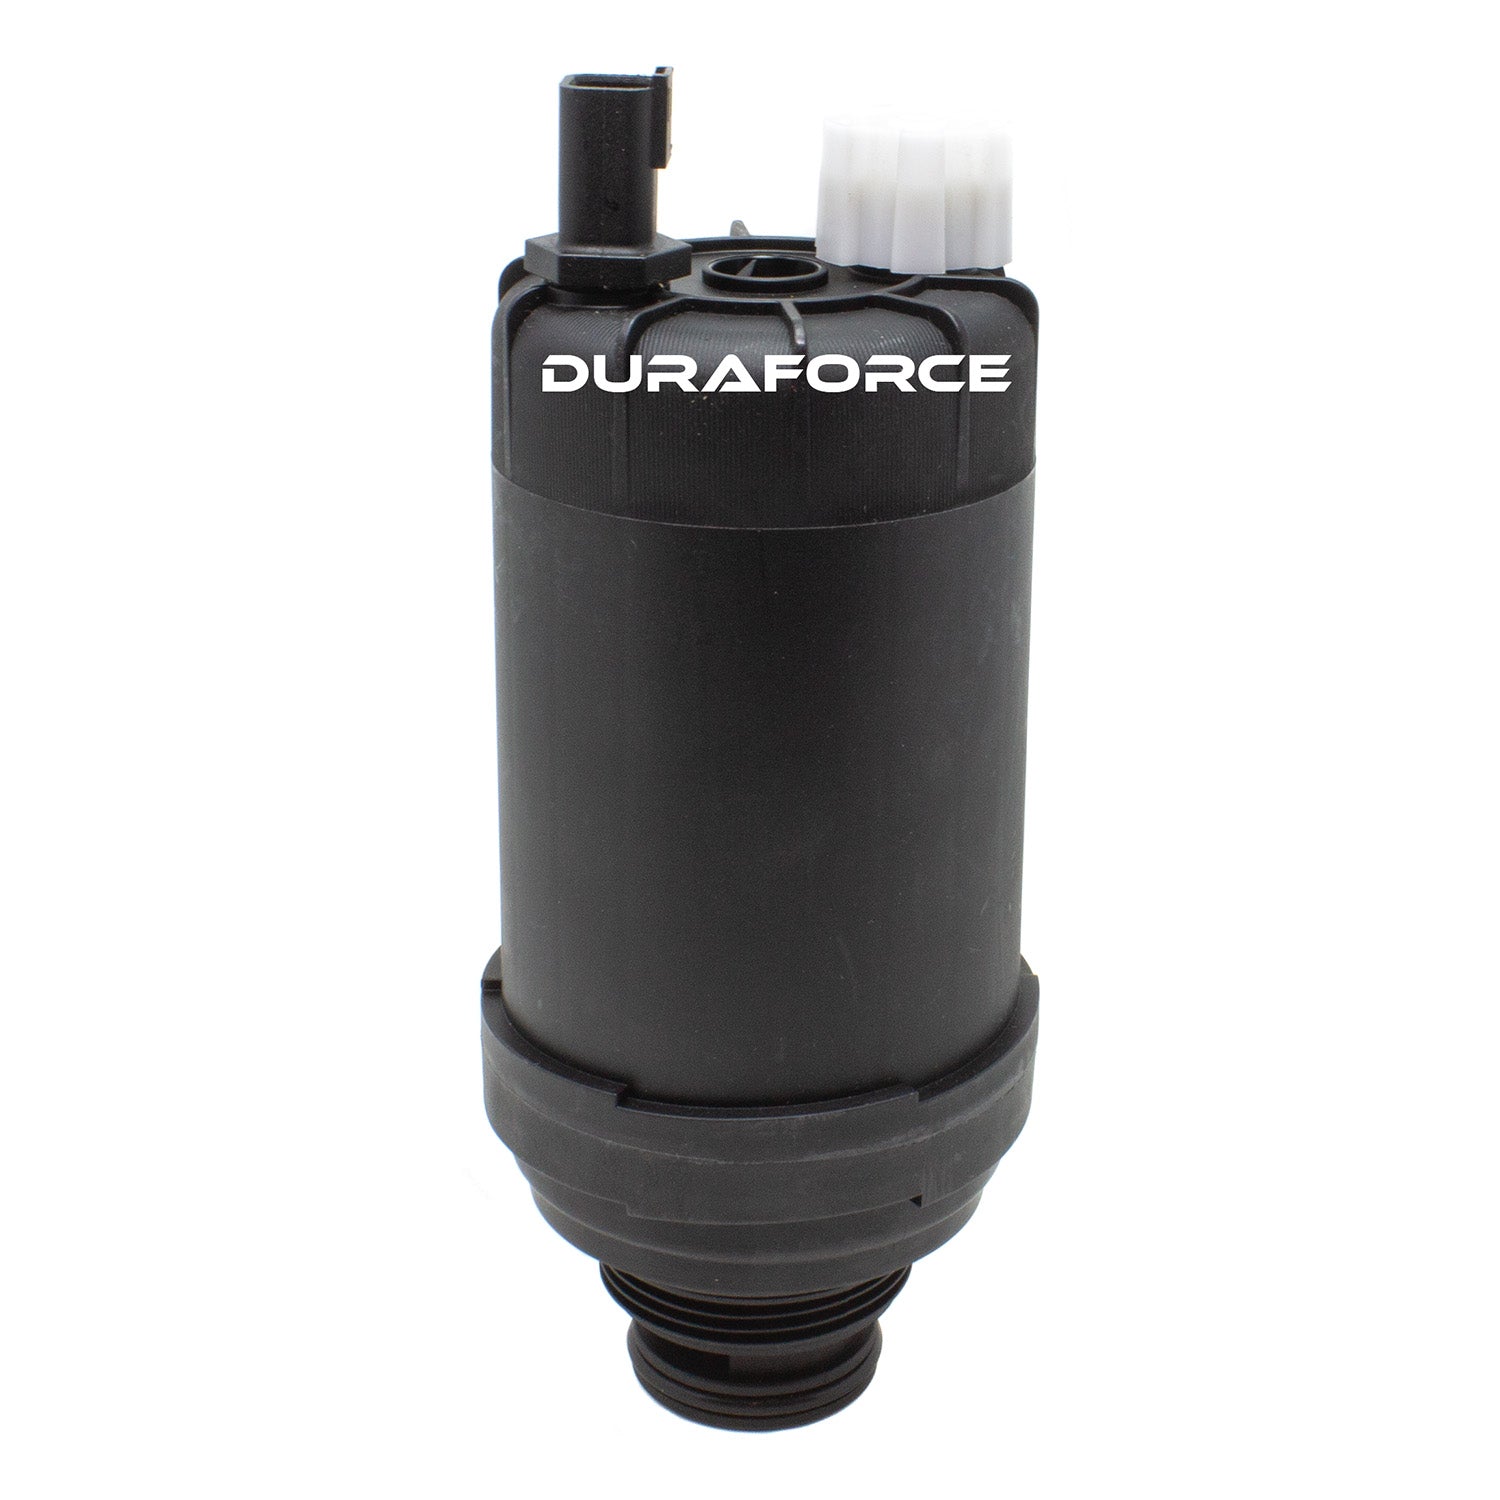 Duraforce 6678233 7023589, Engine Oil & Fuel Filter Kit For Bobcat